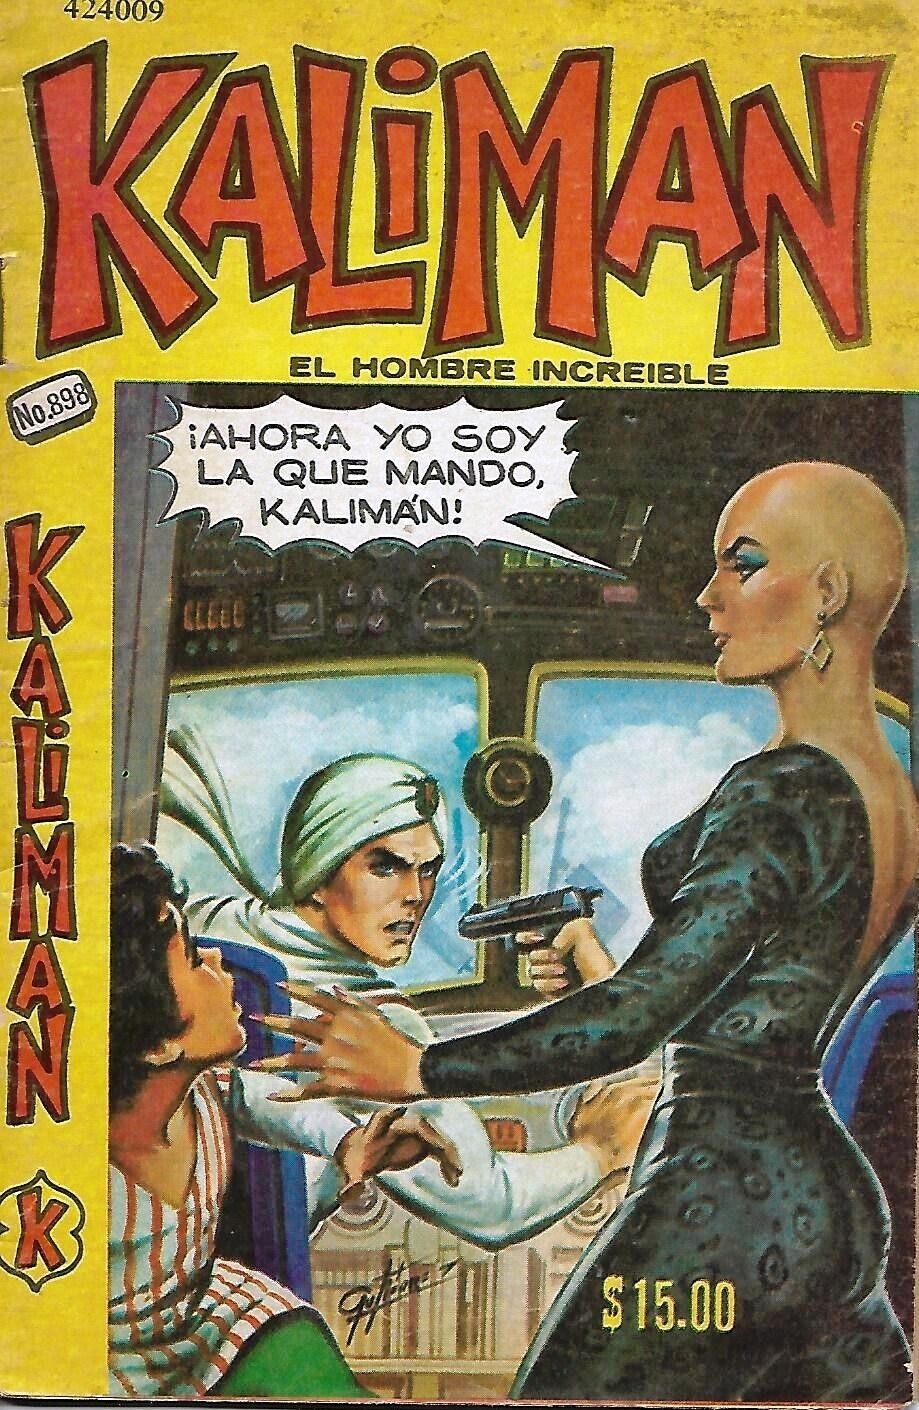 Kaliman El Hombre Increible #898 - Febrero 11, 1983 - Mexico